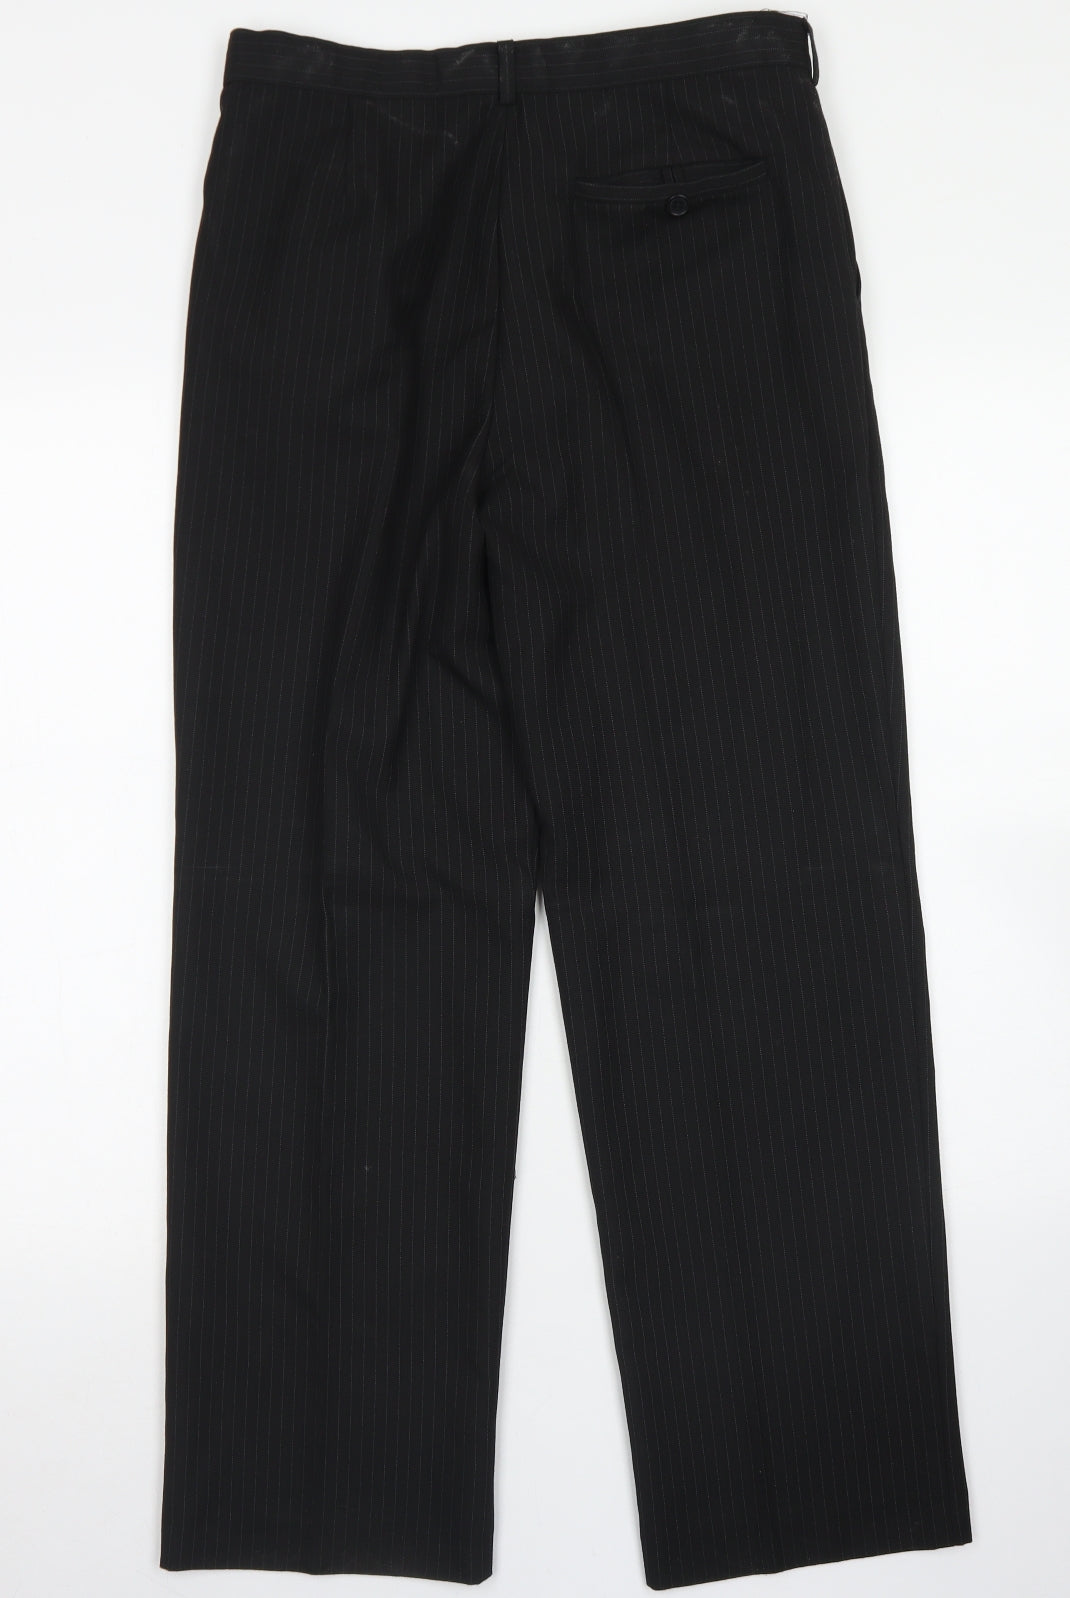 FlipBack Boys Black Striped Polyester Dress Pants Trousers Size 15 Years L26 in Regular Hook & Eye